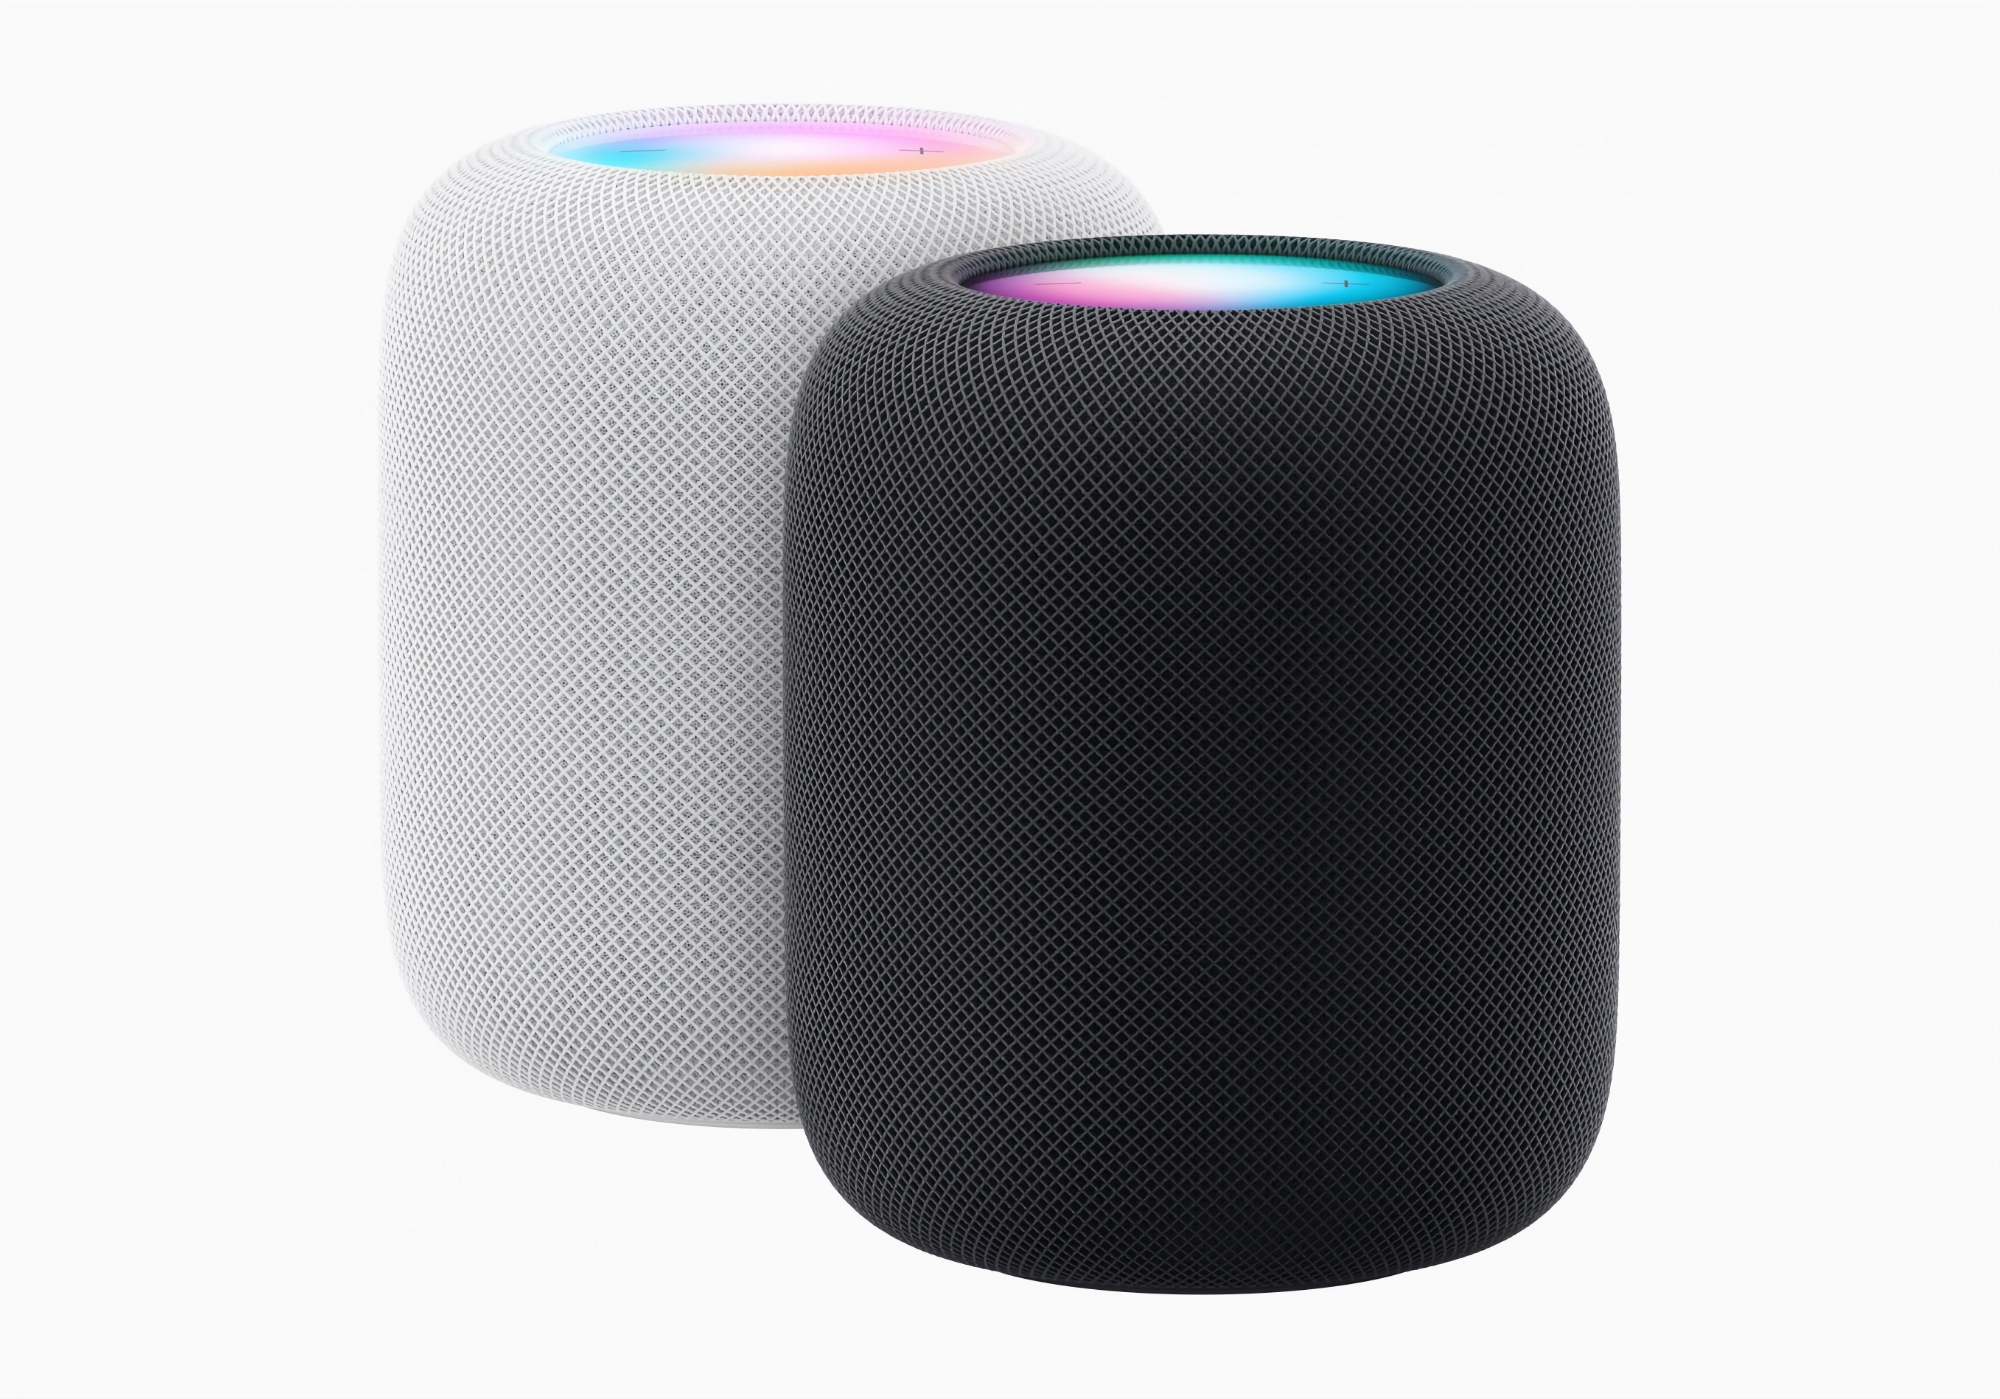 Apple przedstawia HomePod drugiej generacji z poprawionym dźwiękiem, układem S7, nowymi funkcjami i ceną 299 dolarów